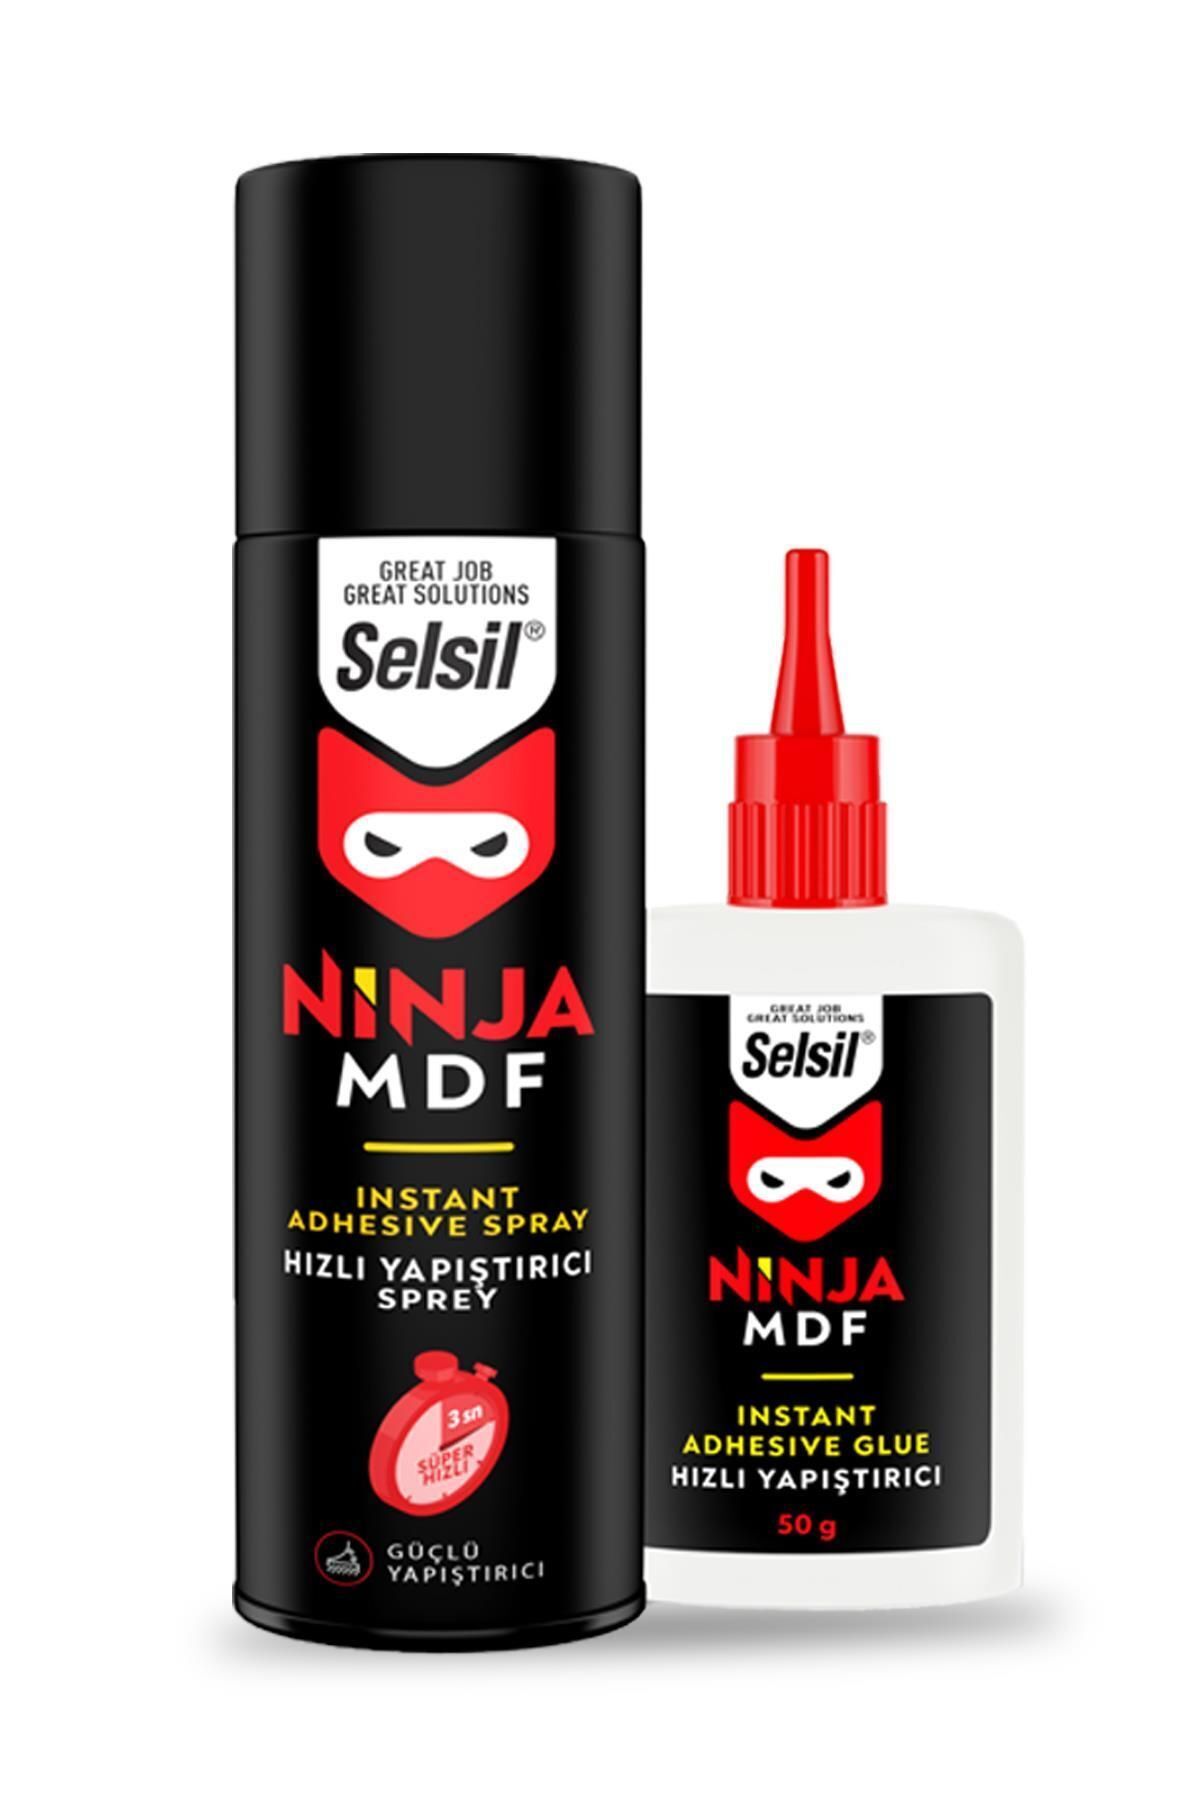 Selsil Ninja Mdf Kit Hızlı Yapıştırıcı 400 100 ml